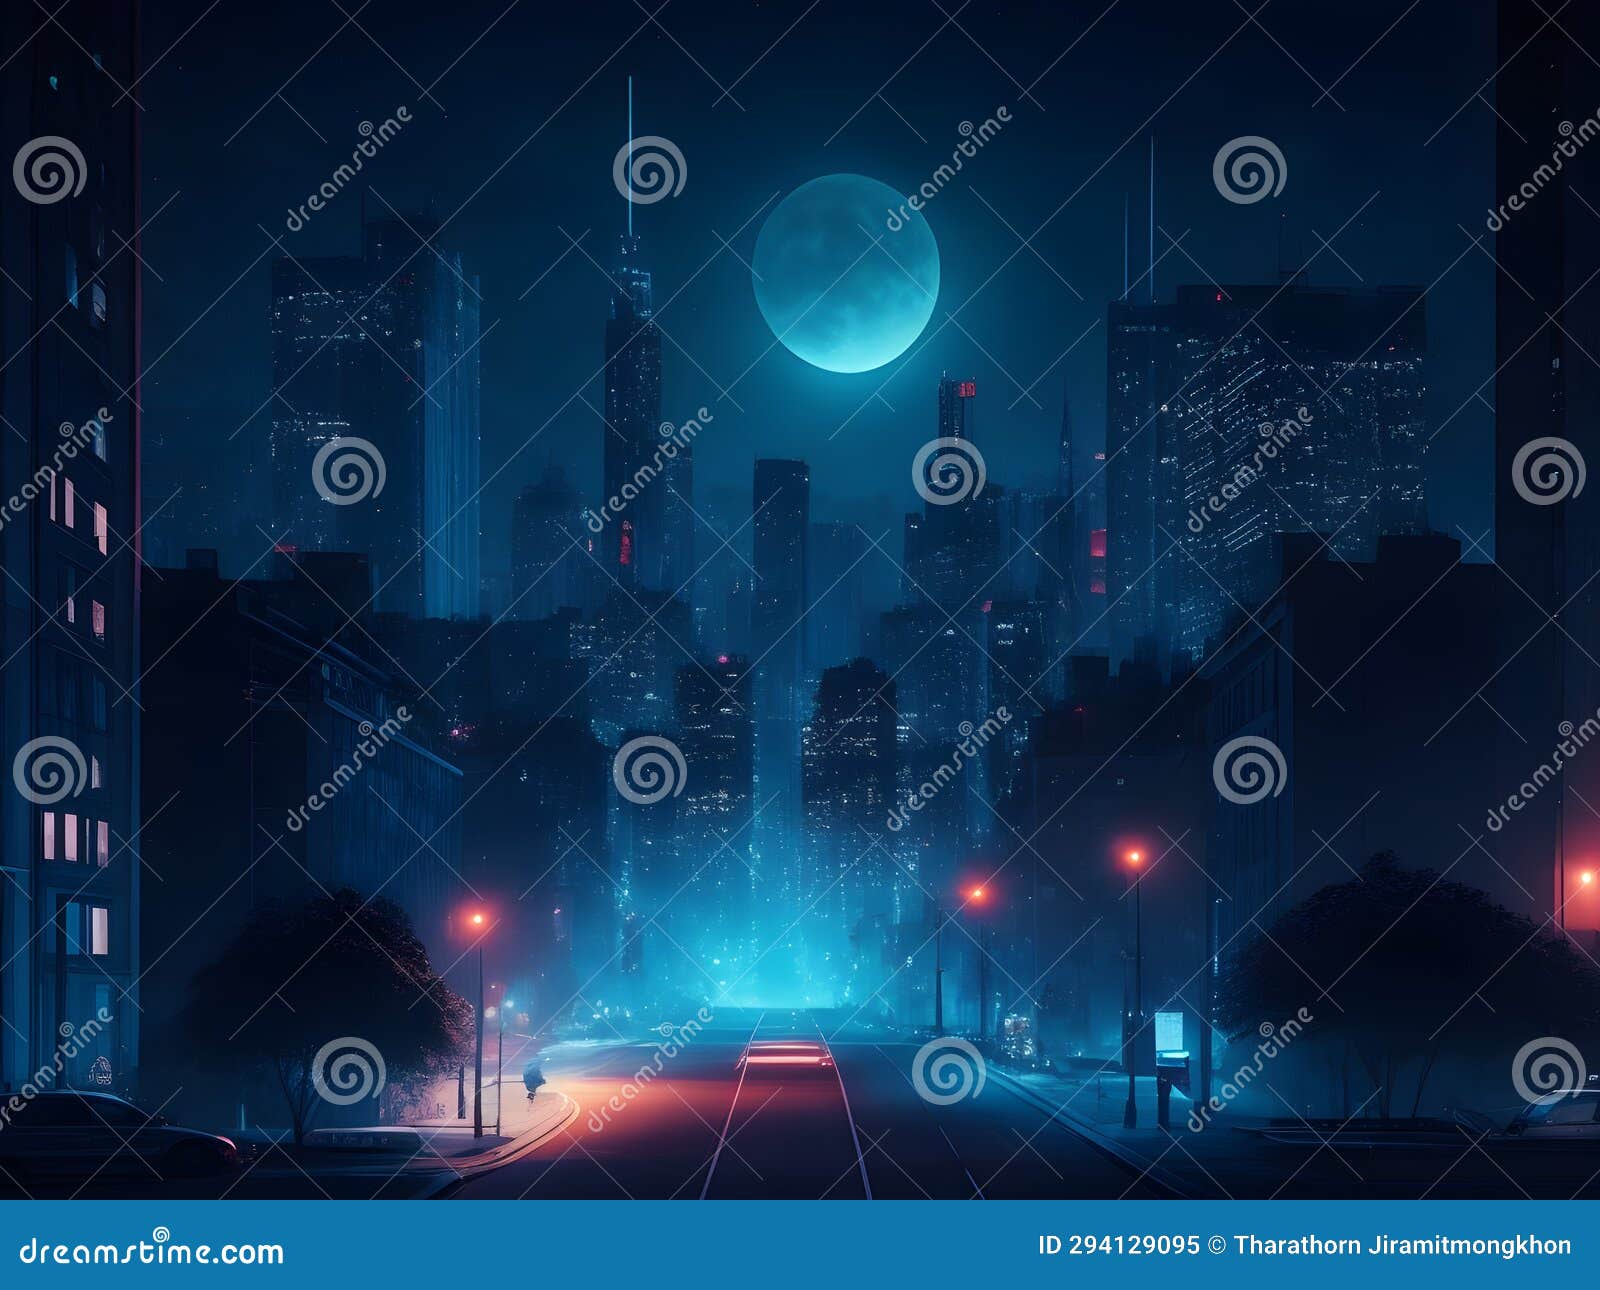 urban nocturne: night cityscape